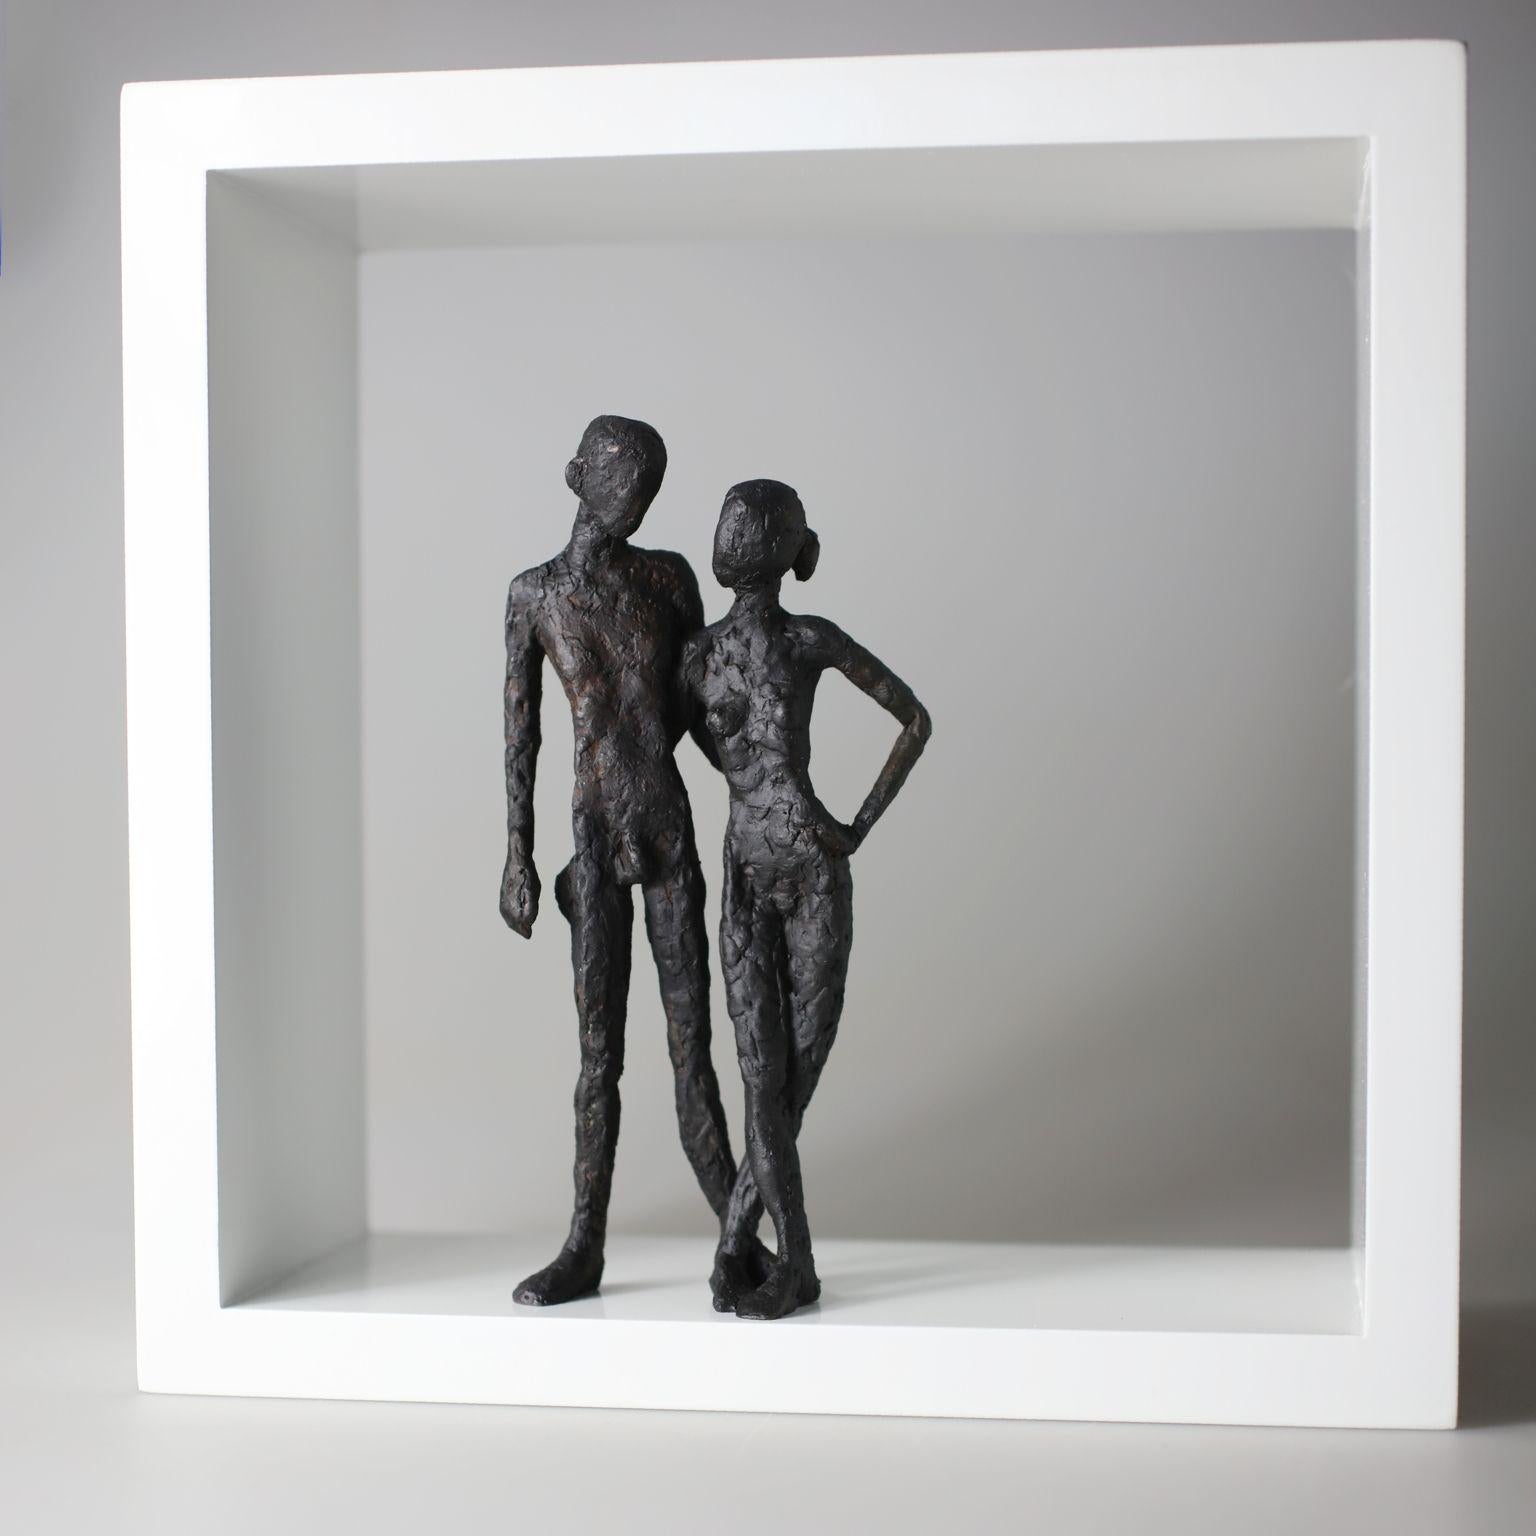 Deux sculptures de nus contemporaines en bronze, de style minimaliste, debout dans un cadre en bois